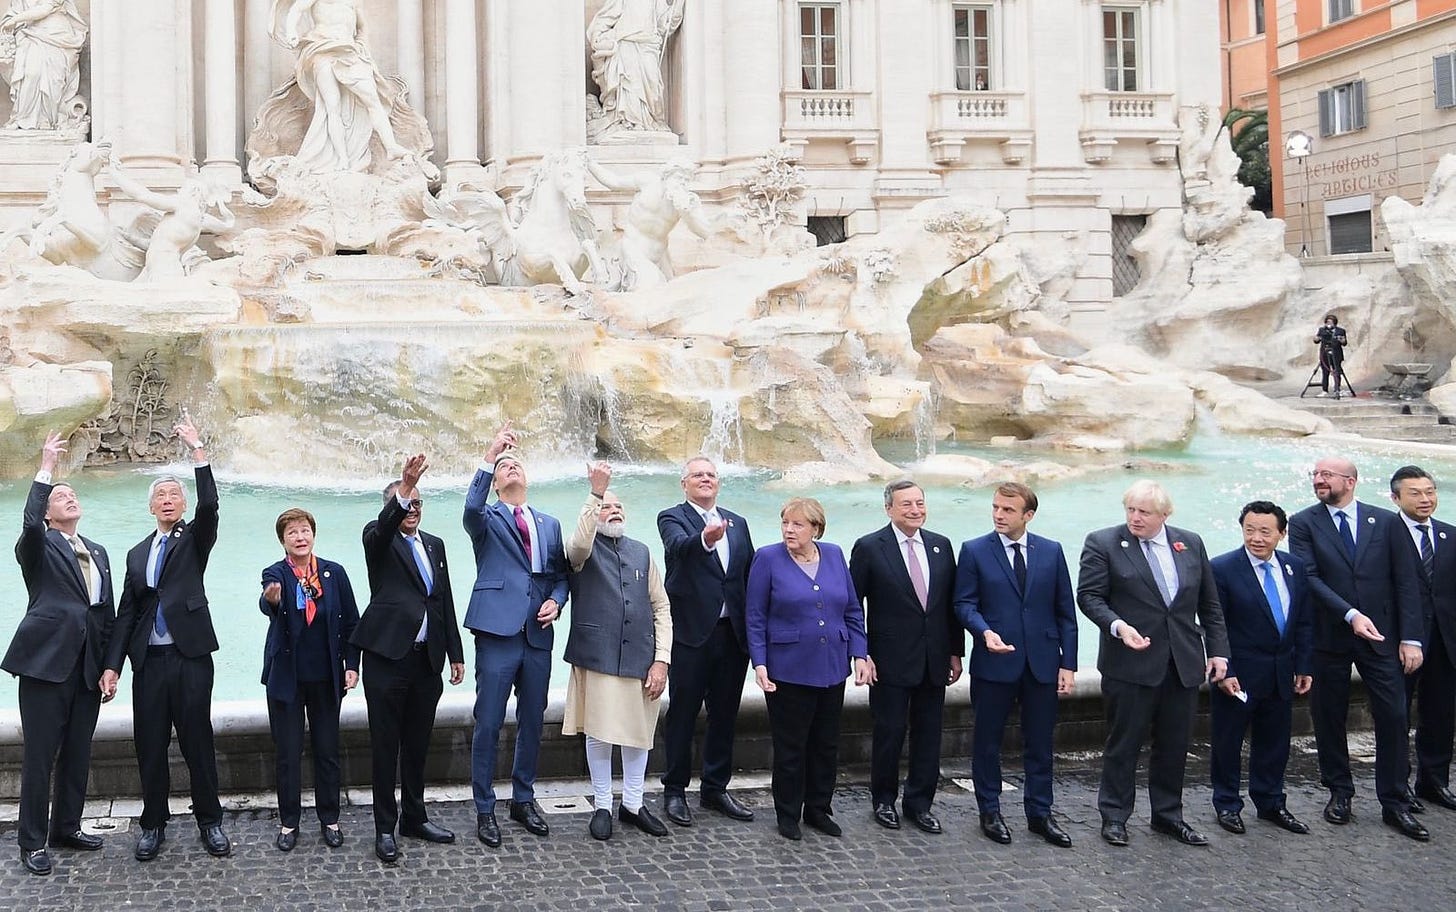 Les dirigeants du G20 (représentant 80% du PIB mondial) photographiés jetant une pièce en guise de bonne fortune dans la Fontaine de Trevi - à défaut d’être parvenus à s’entendre sur des engagements climatiques forts (interprétation personnelle...)